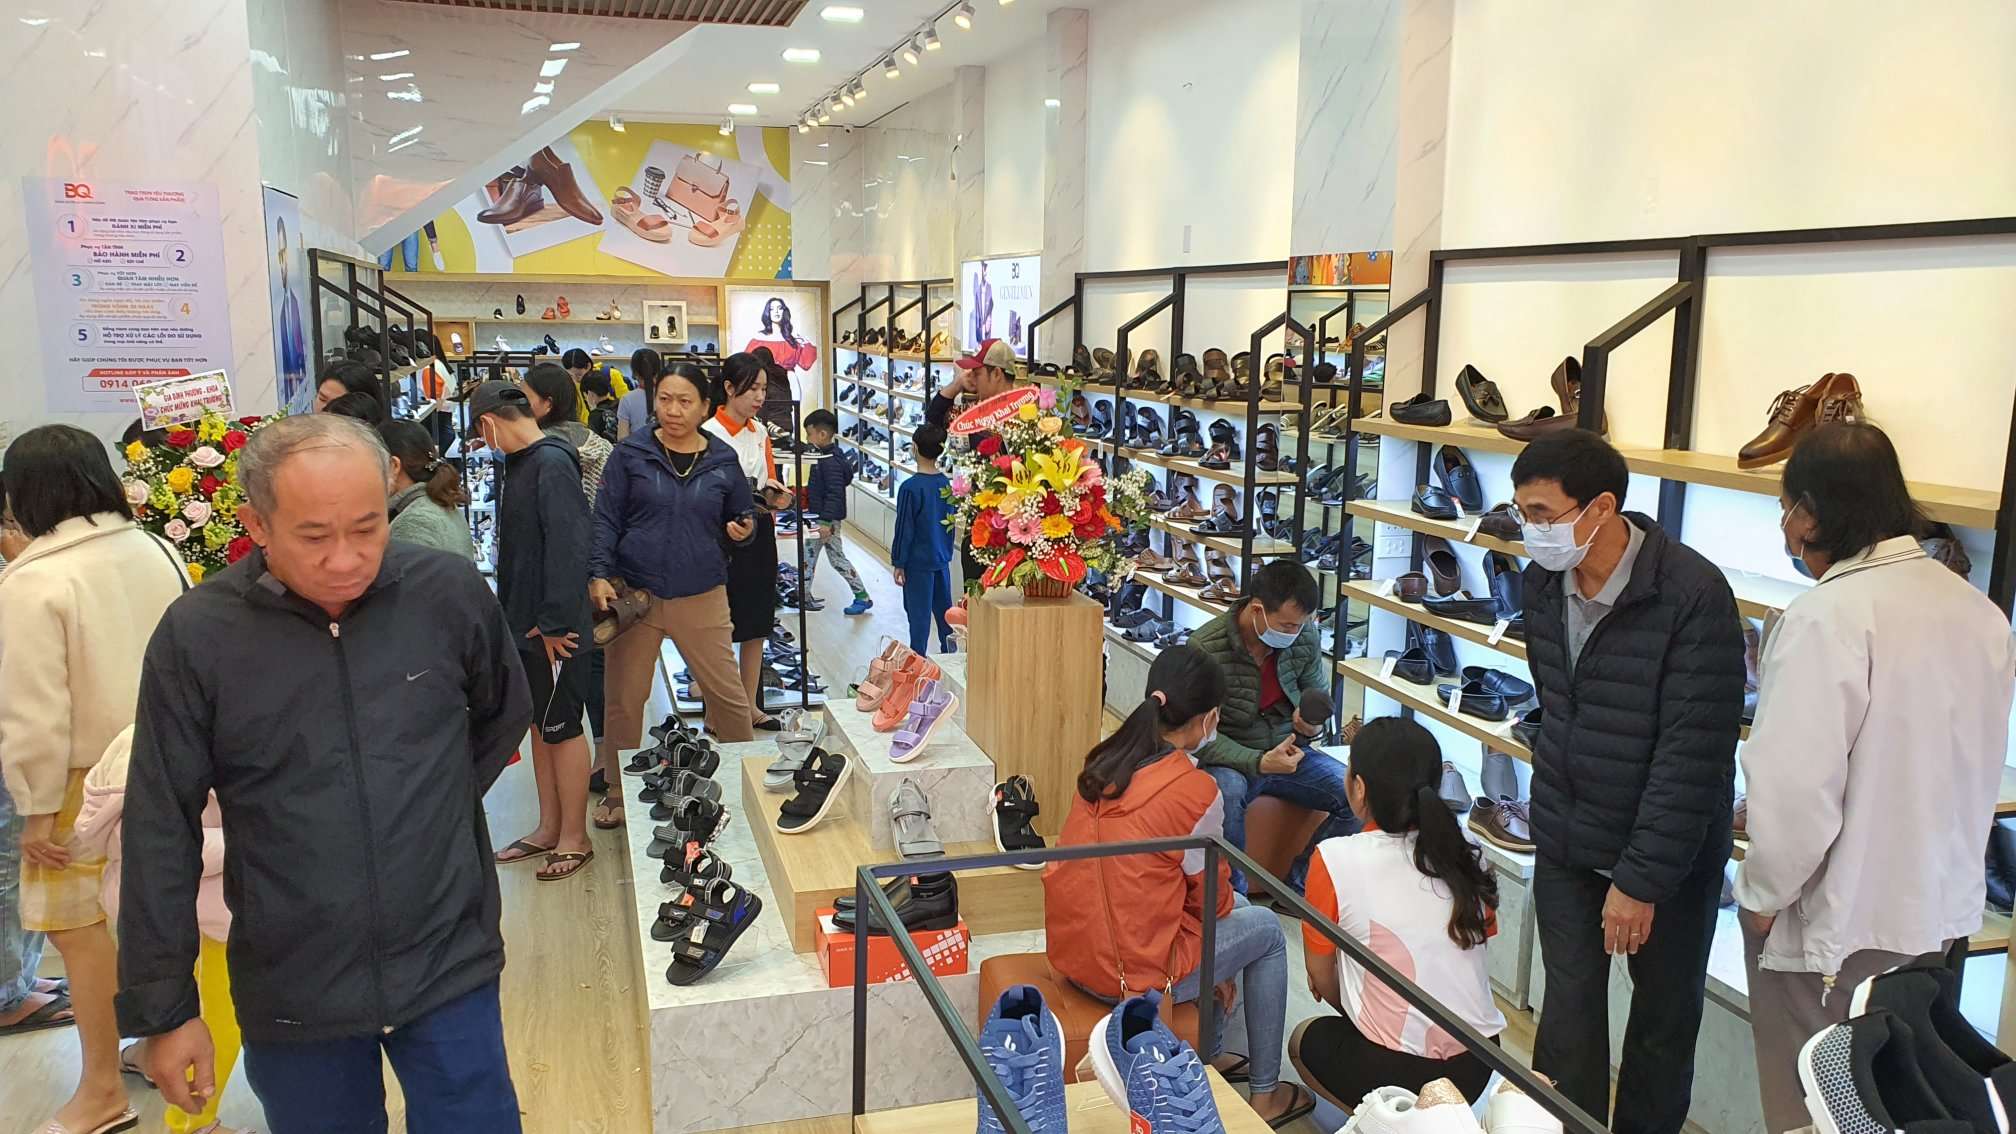 Shop giày sandal Đà Nẵng tự hào đạt danh hiệu hàng Việt Nam chất lương cao trong gần 10 năm qua.